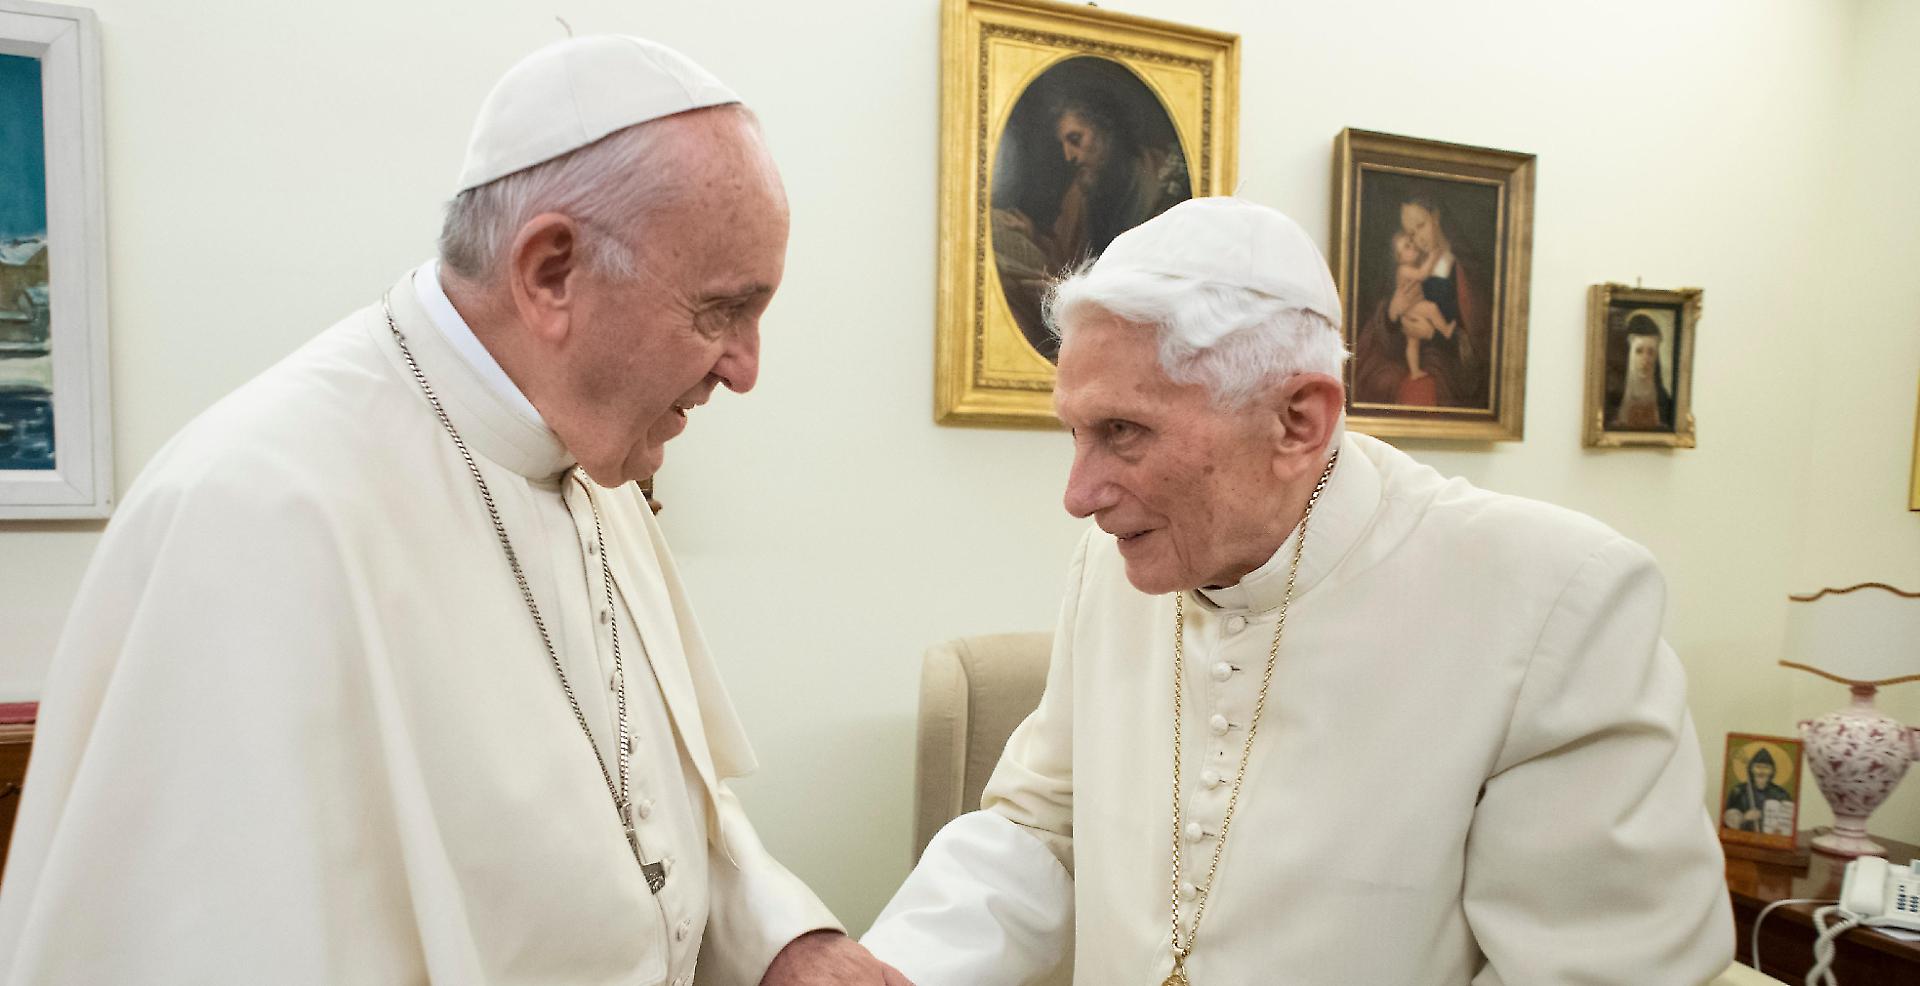 Homoseksuele huwelike, dit is die gedagte van pous Benedictus XVI